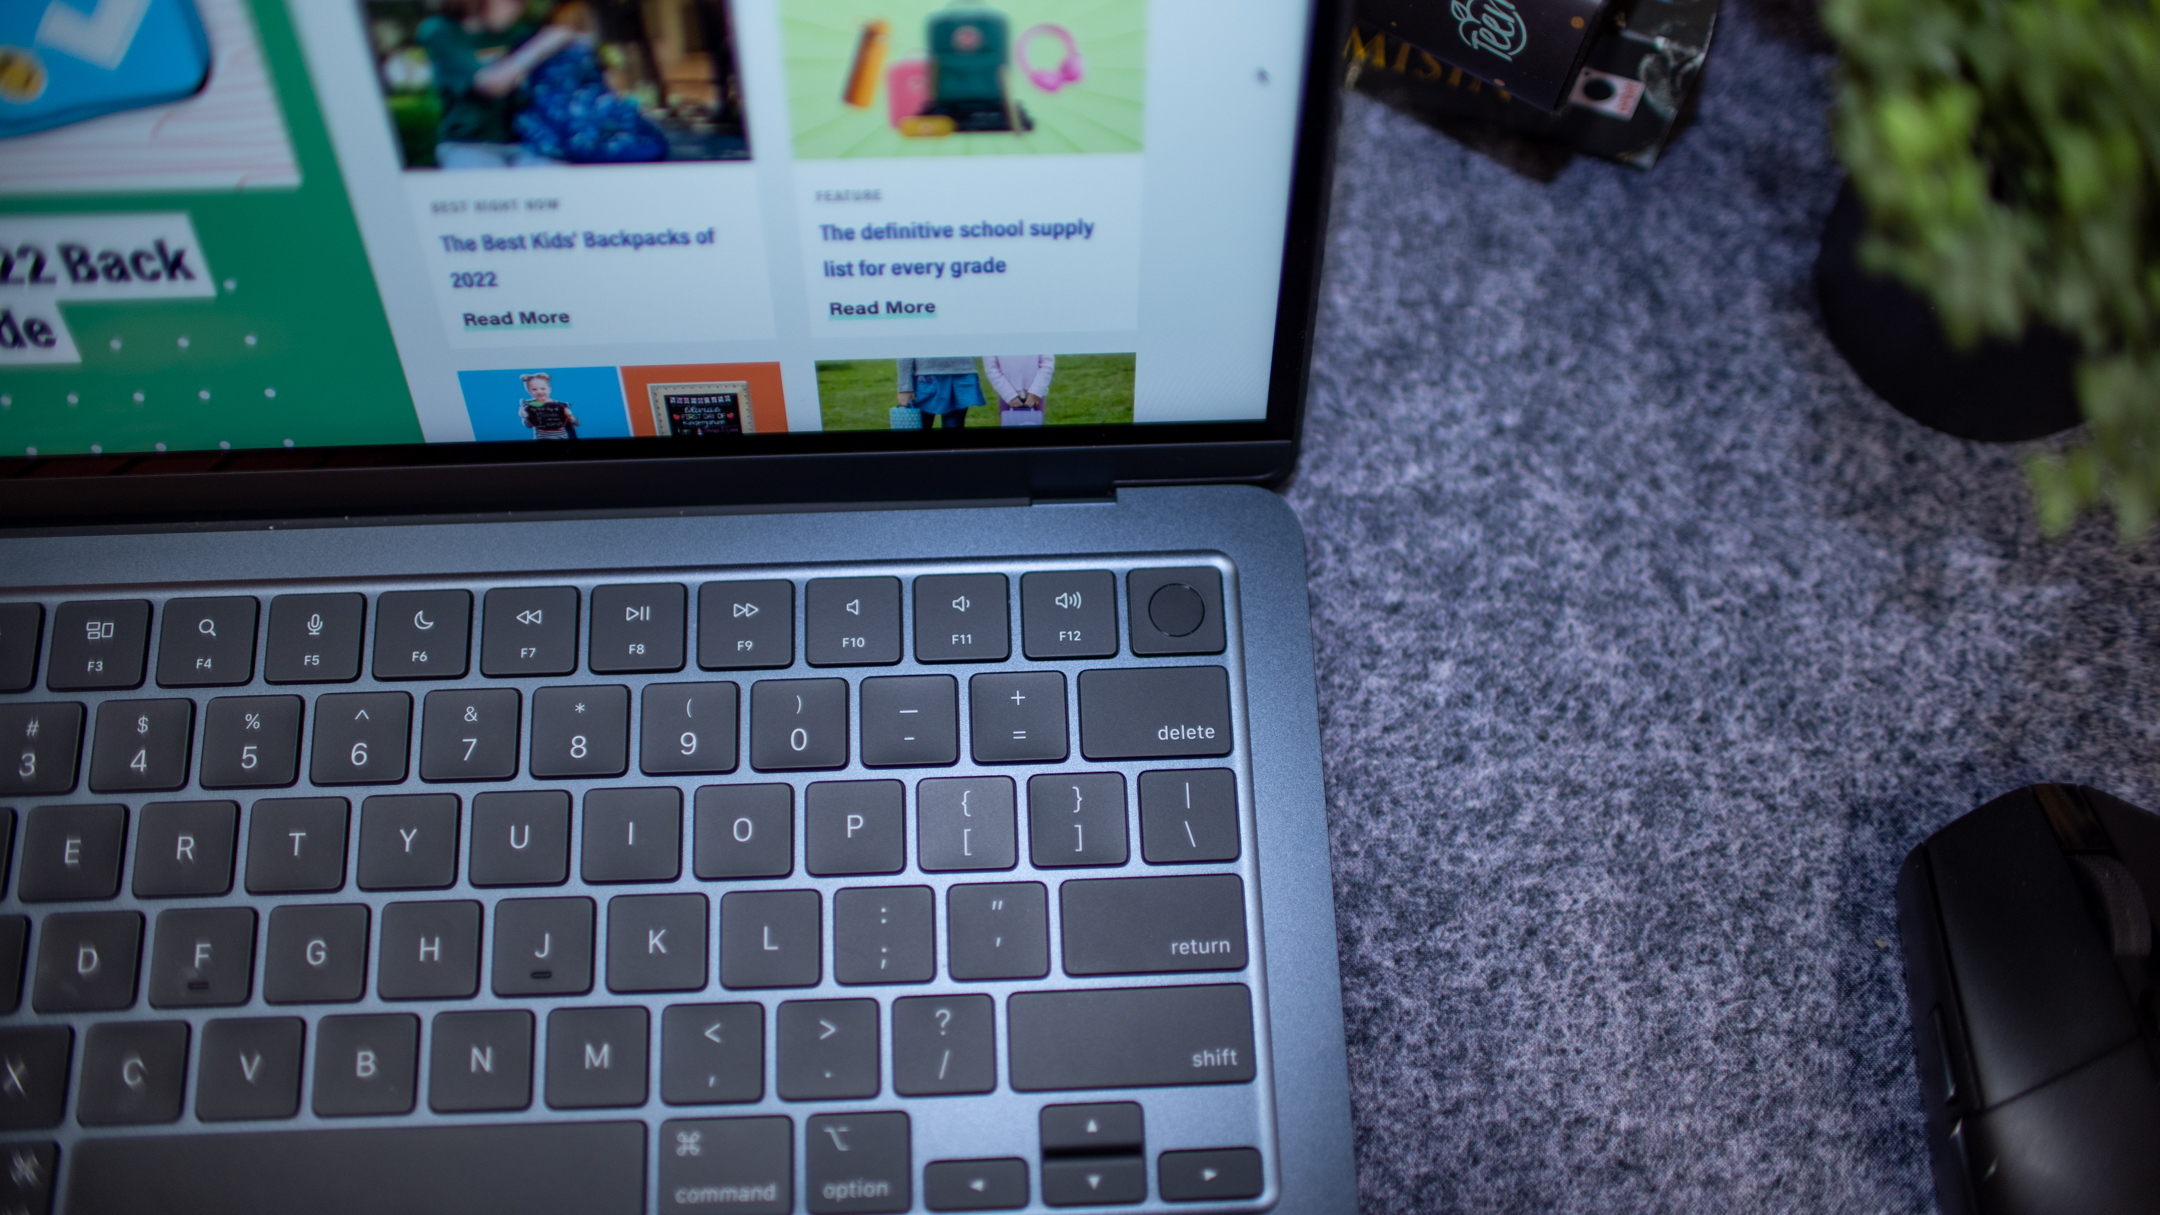 O fotografie aeriană a tastaturii unui MacBook Air M2, care arată tastele funcționale cu înălțime completă